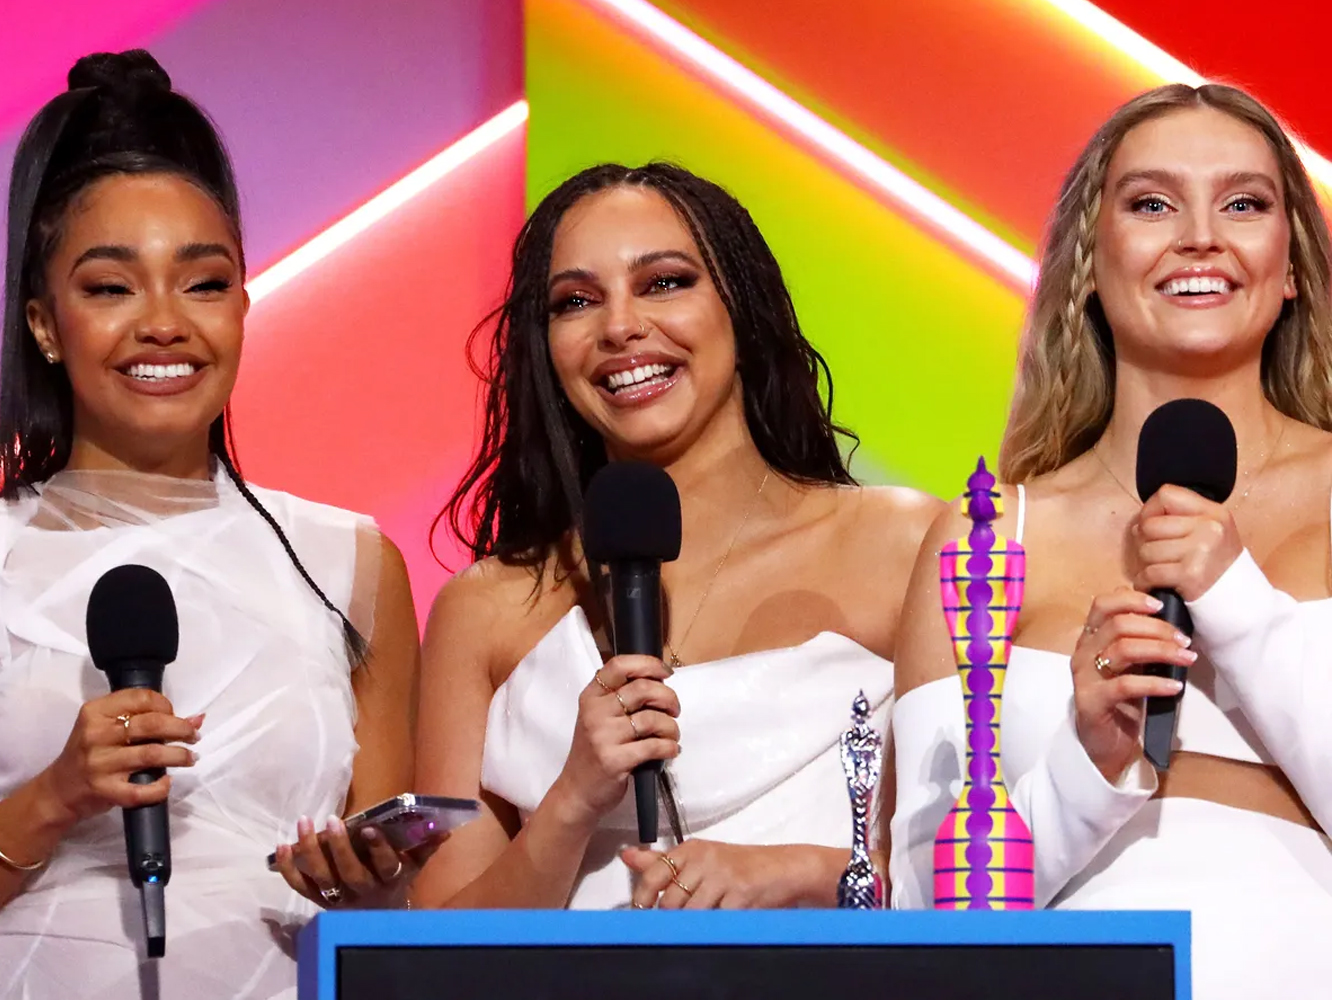  Premios Brit 2021 | Dua Lipa (2) repite triunfo y Little Mix hacen historia en una gala liderada por mujeres